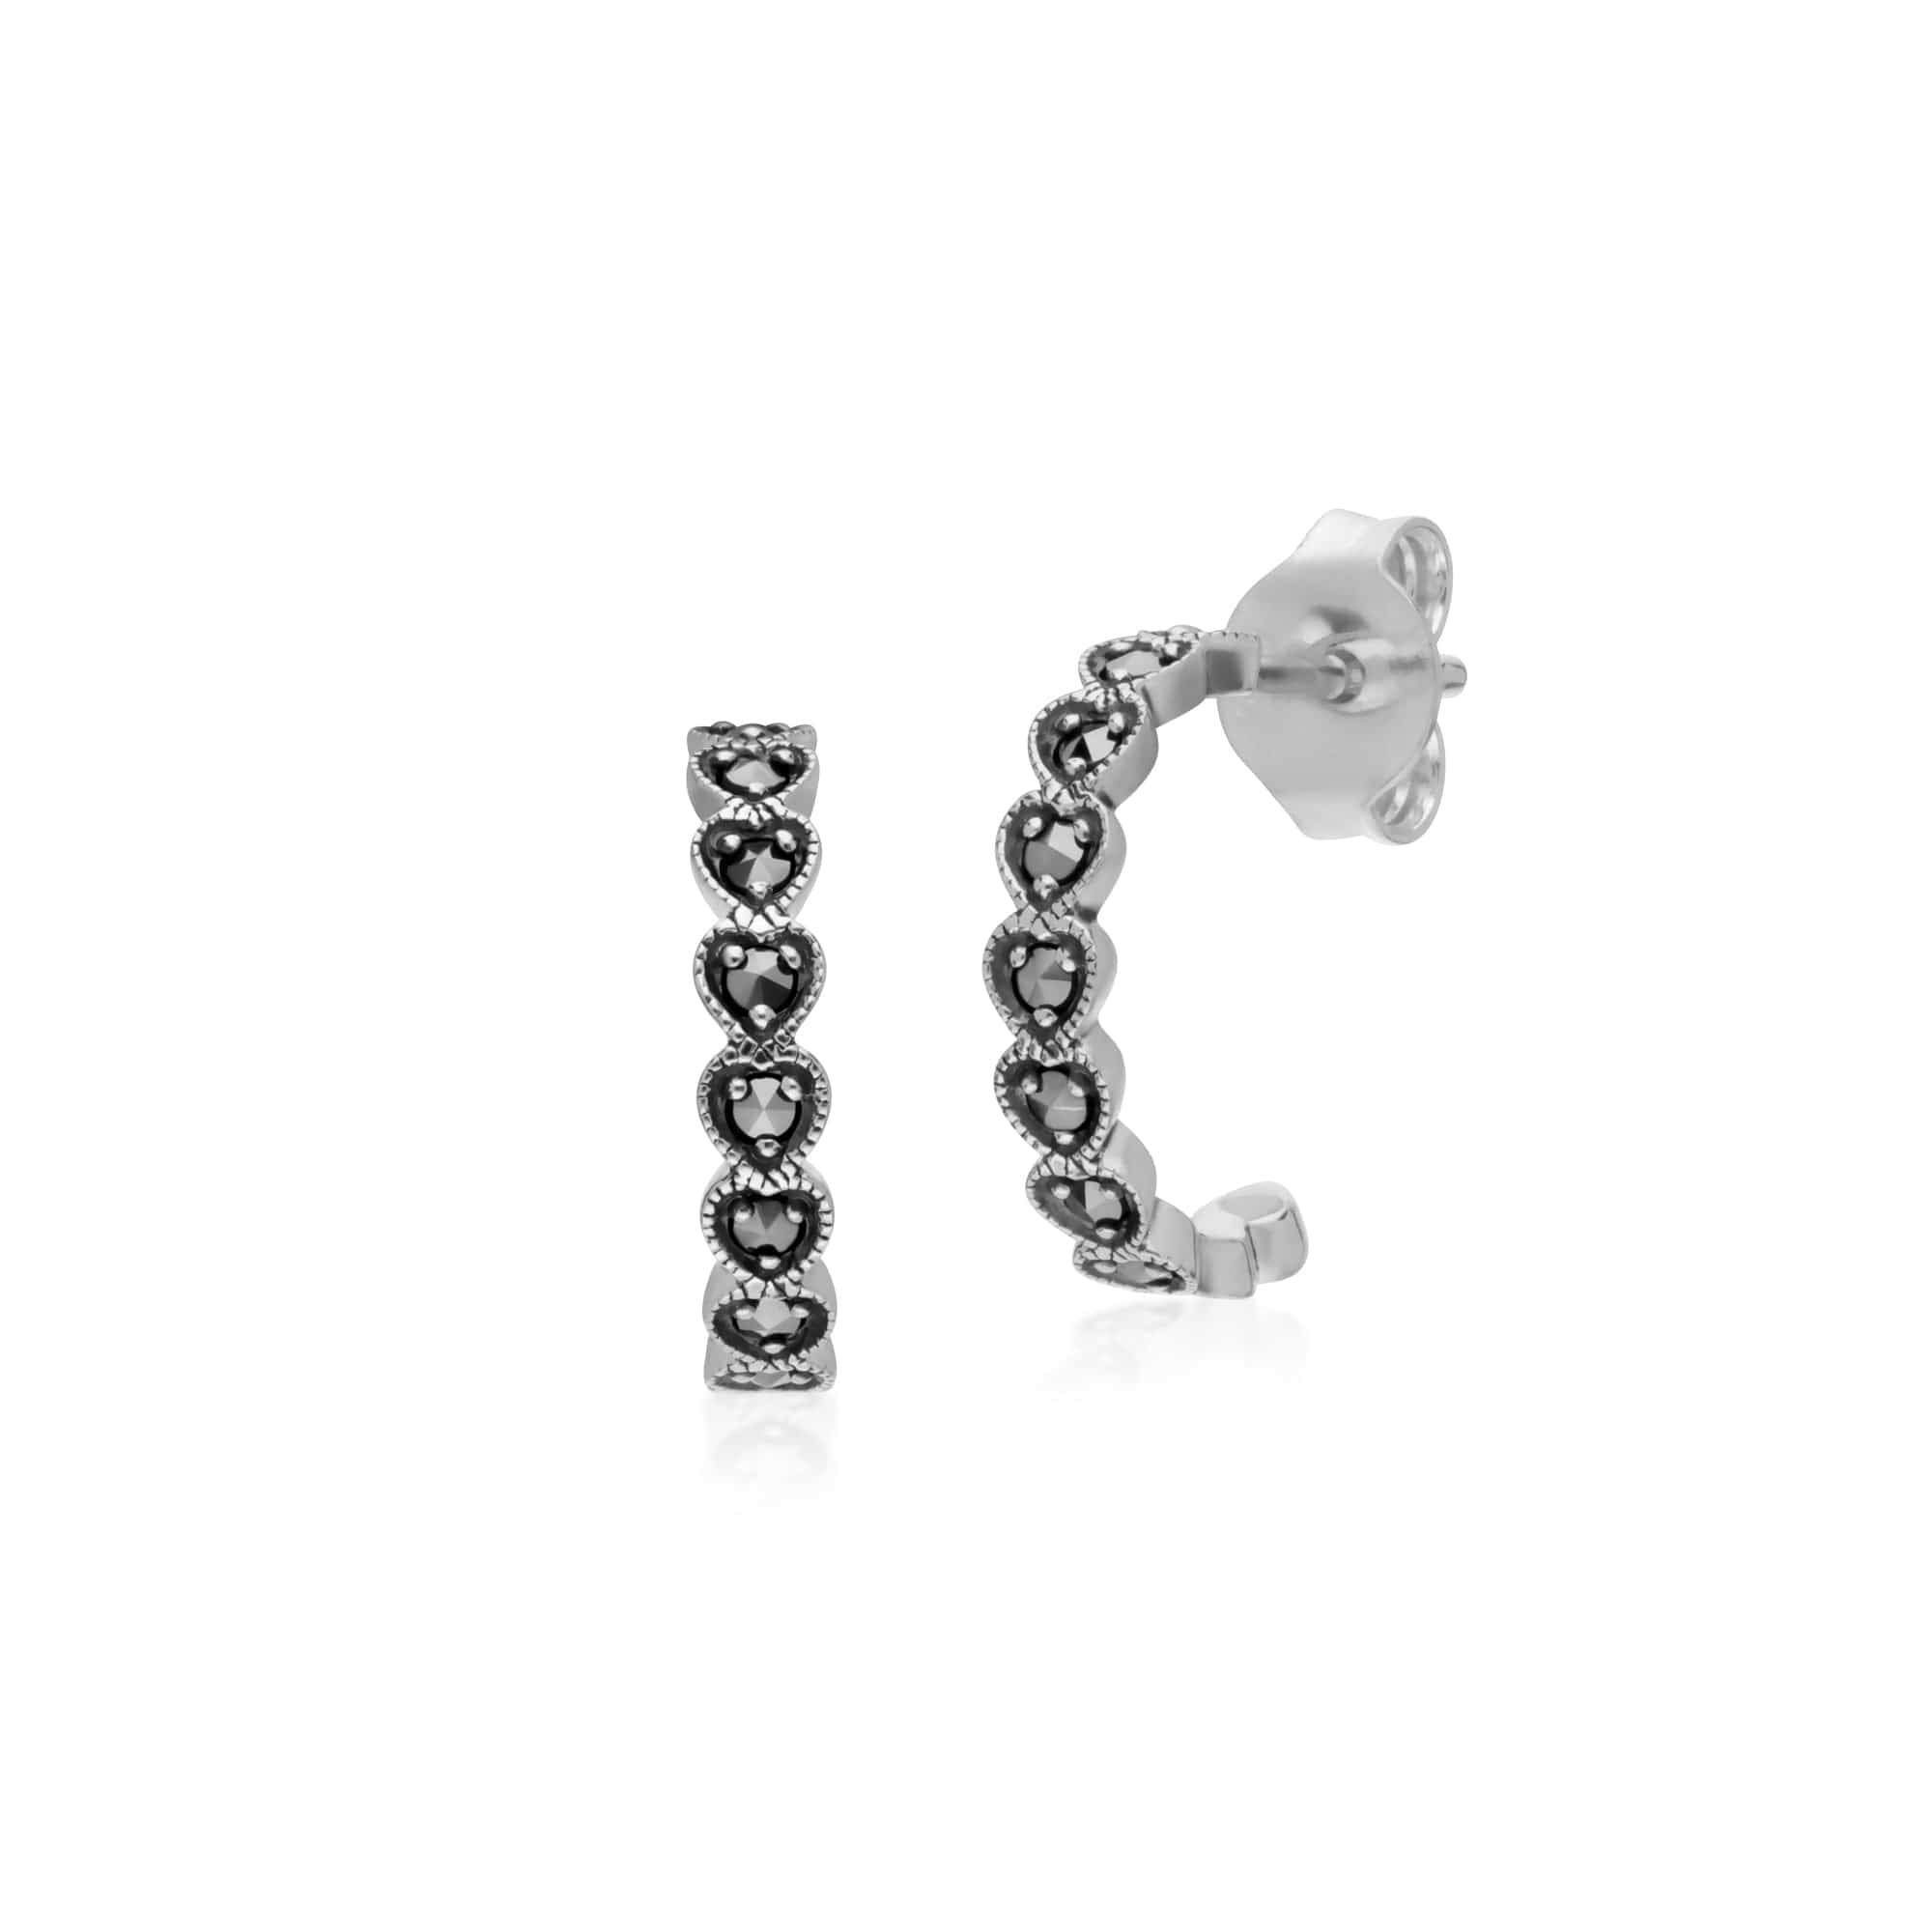 Photos - Earrings Geometric Heart Marcasite Half Hoop  in 925 Sterling Silver